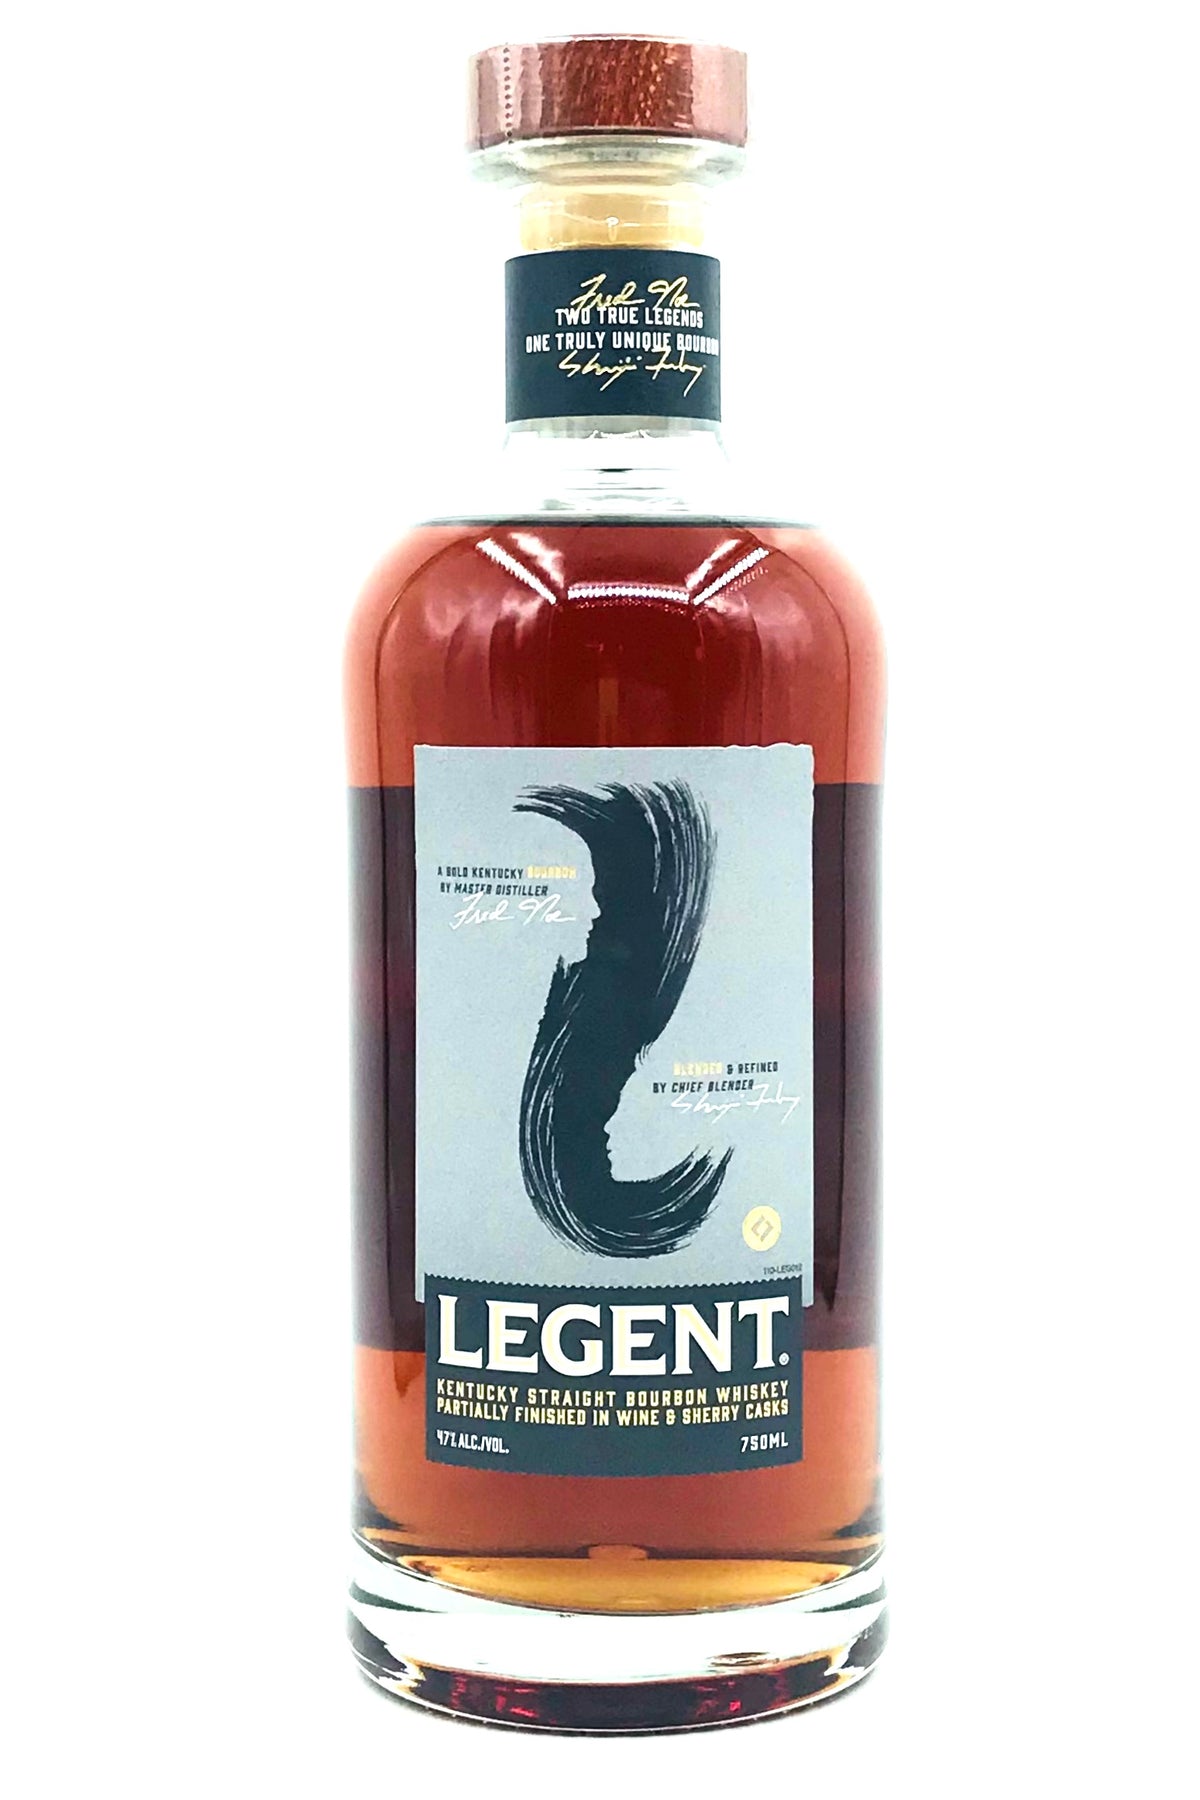 Legent Truly Unique Bourbon Whiskey